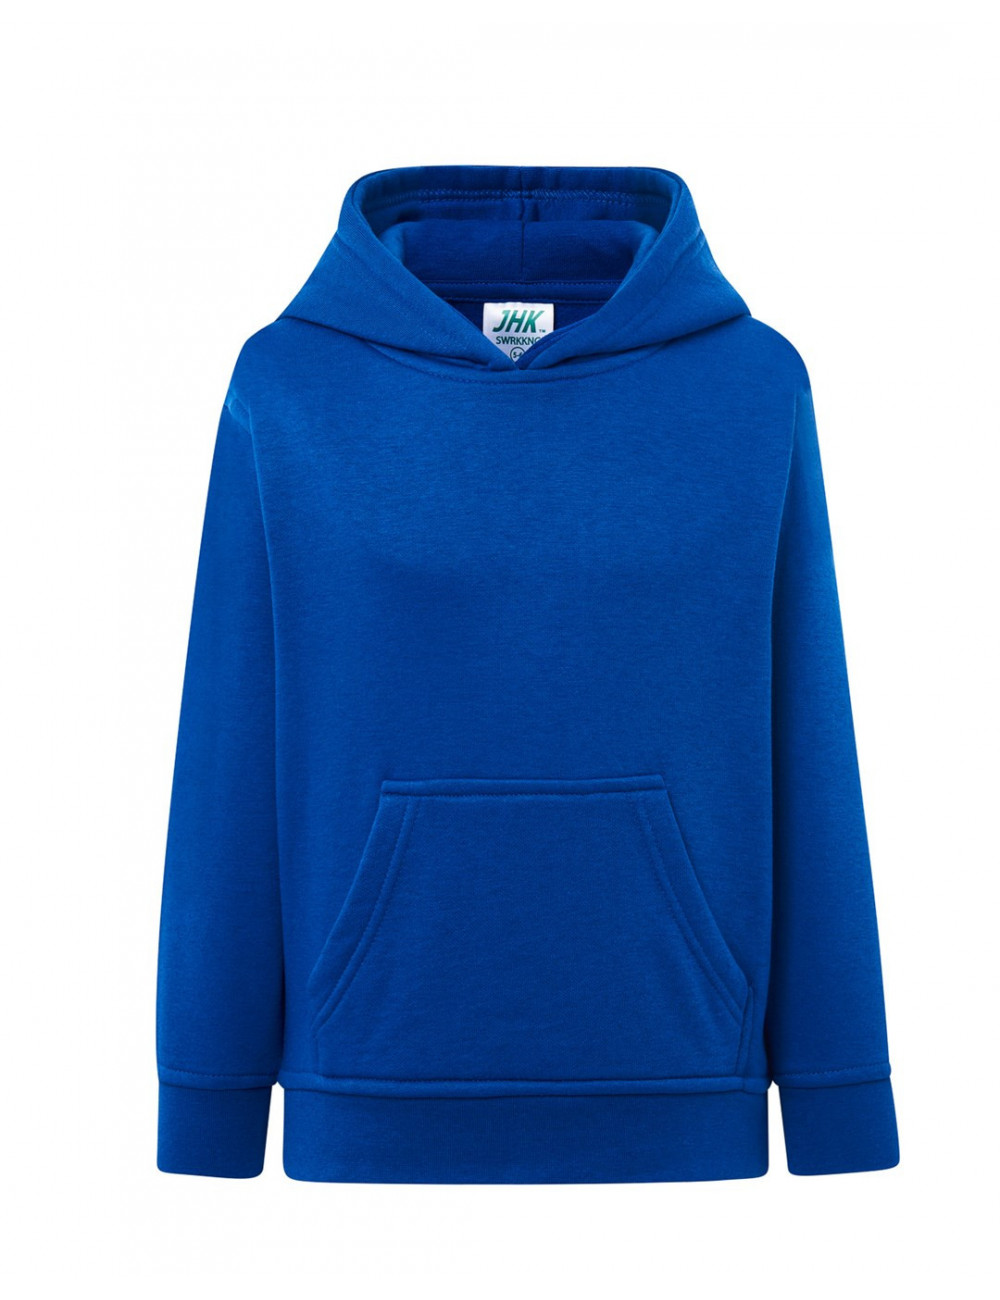 Children`s sweatshirt swrk kng kid kangaroo royal blue Jhk